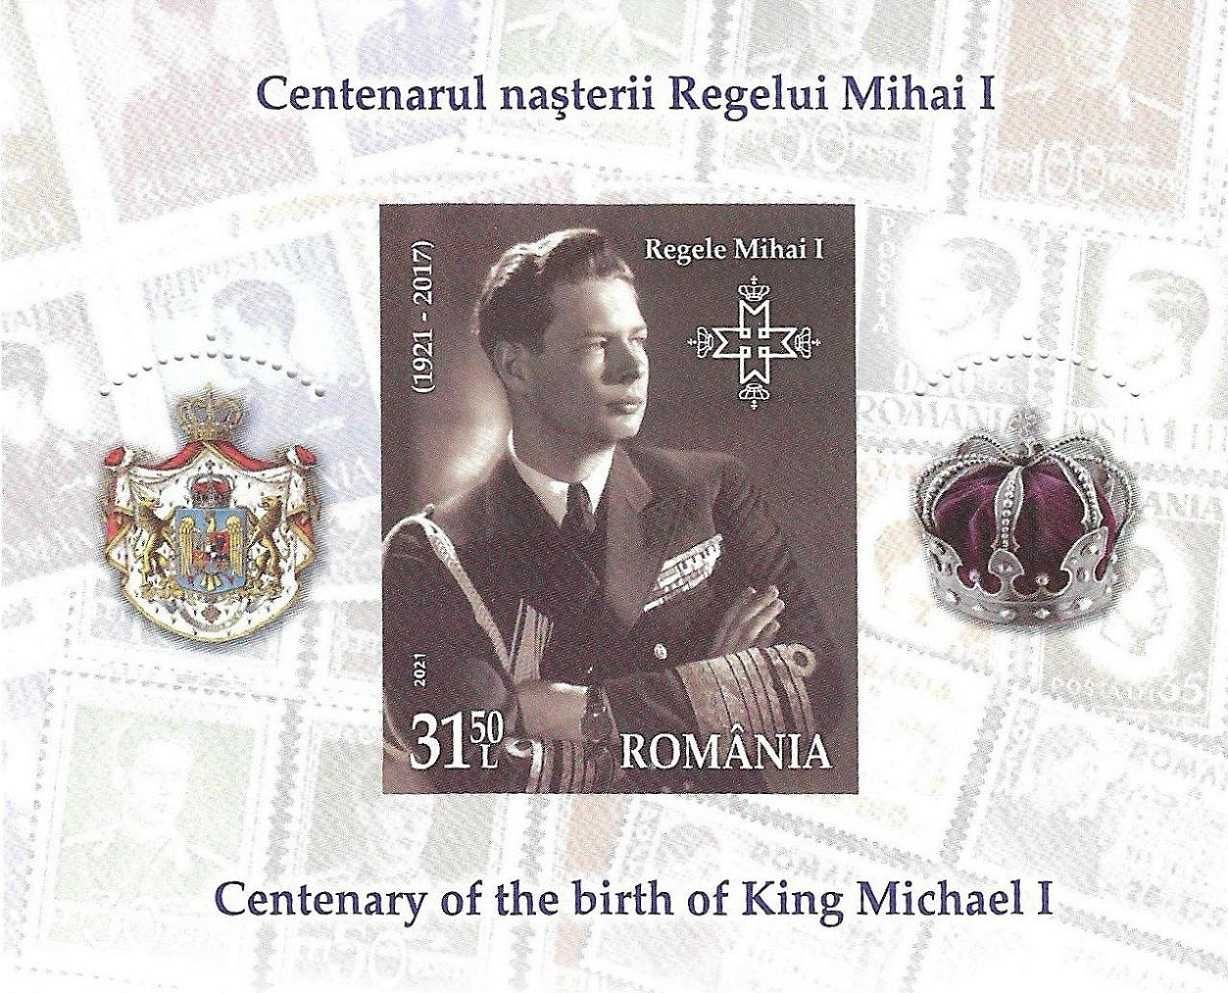 Super timbre colita nestampilata tema monarhia in Romania regele Mihai